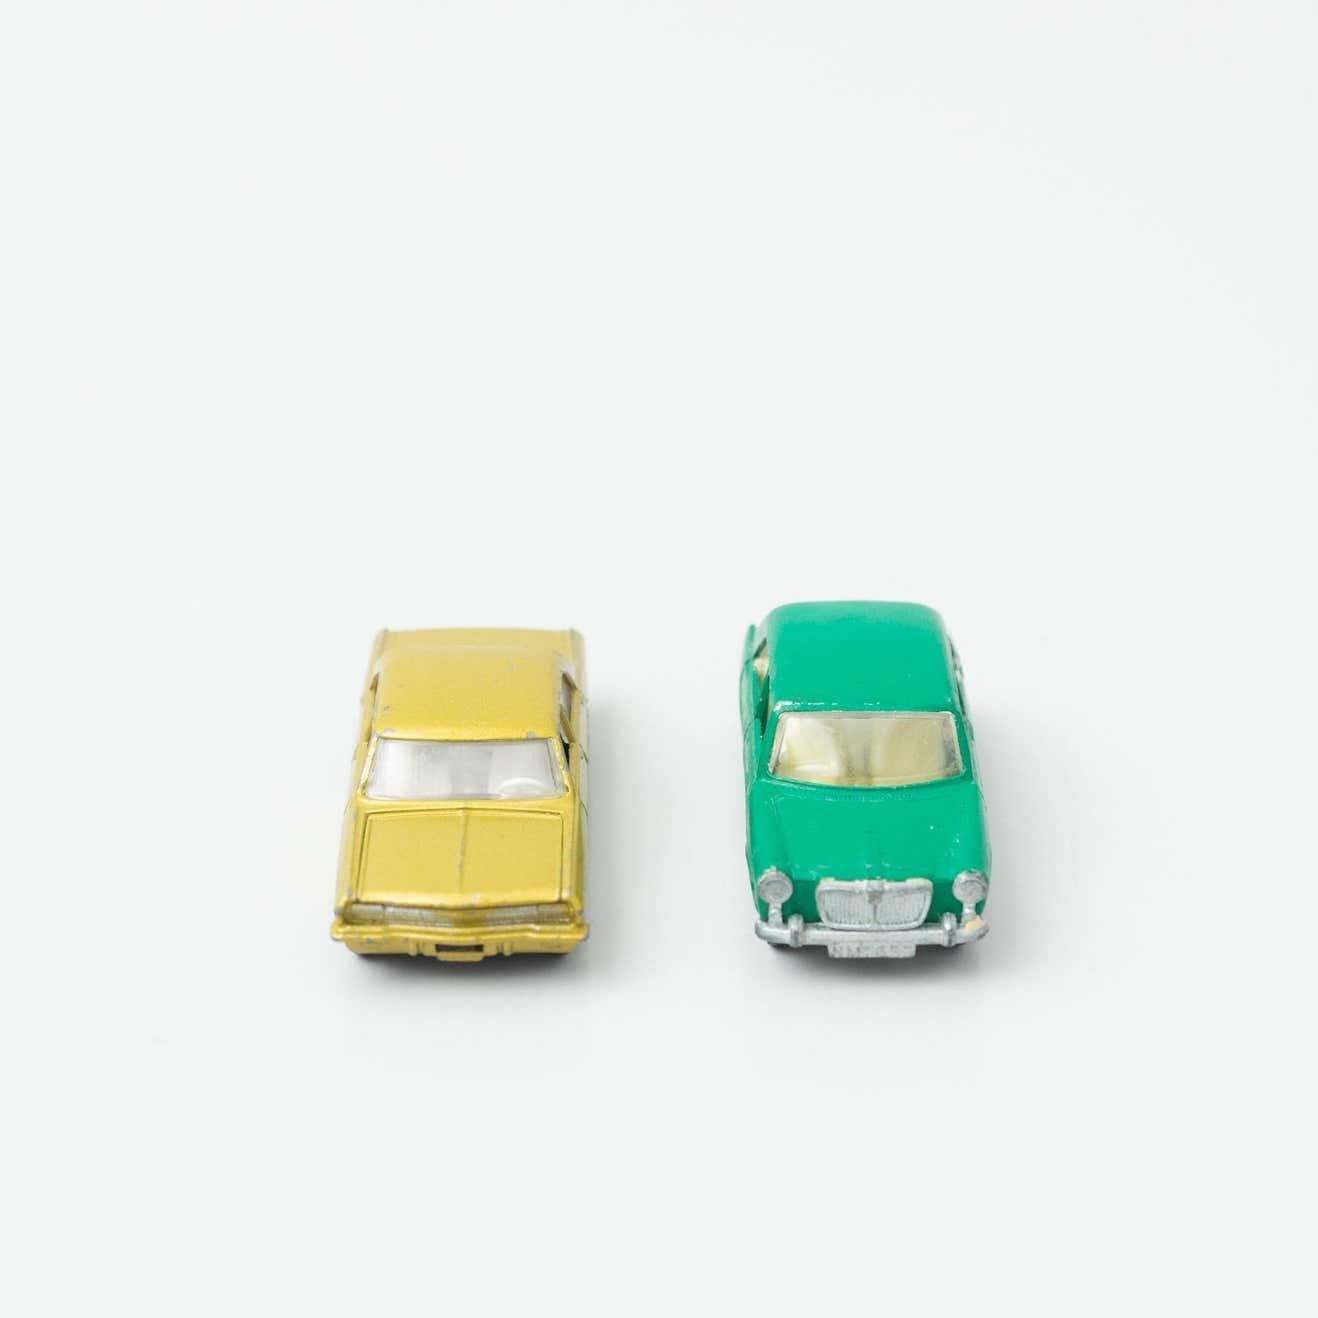 Ensemble de deux jouets en forme de voiture Opel.
Par MatchBox, vers 1960.

En état d'origine, avec une usure mineure conforme à l'âge et à l'utilisation, préservant une belle patine.

Matériaux :
Métal
Plastique

Dimensions (chacun) :
D 7,1 cm x L